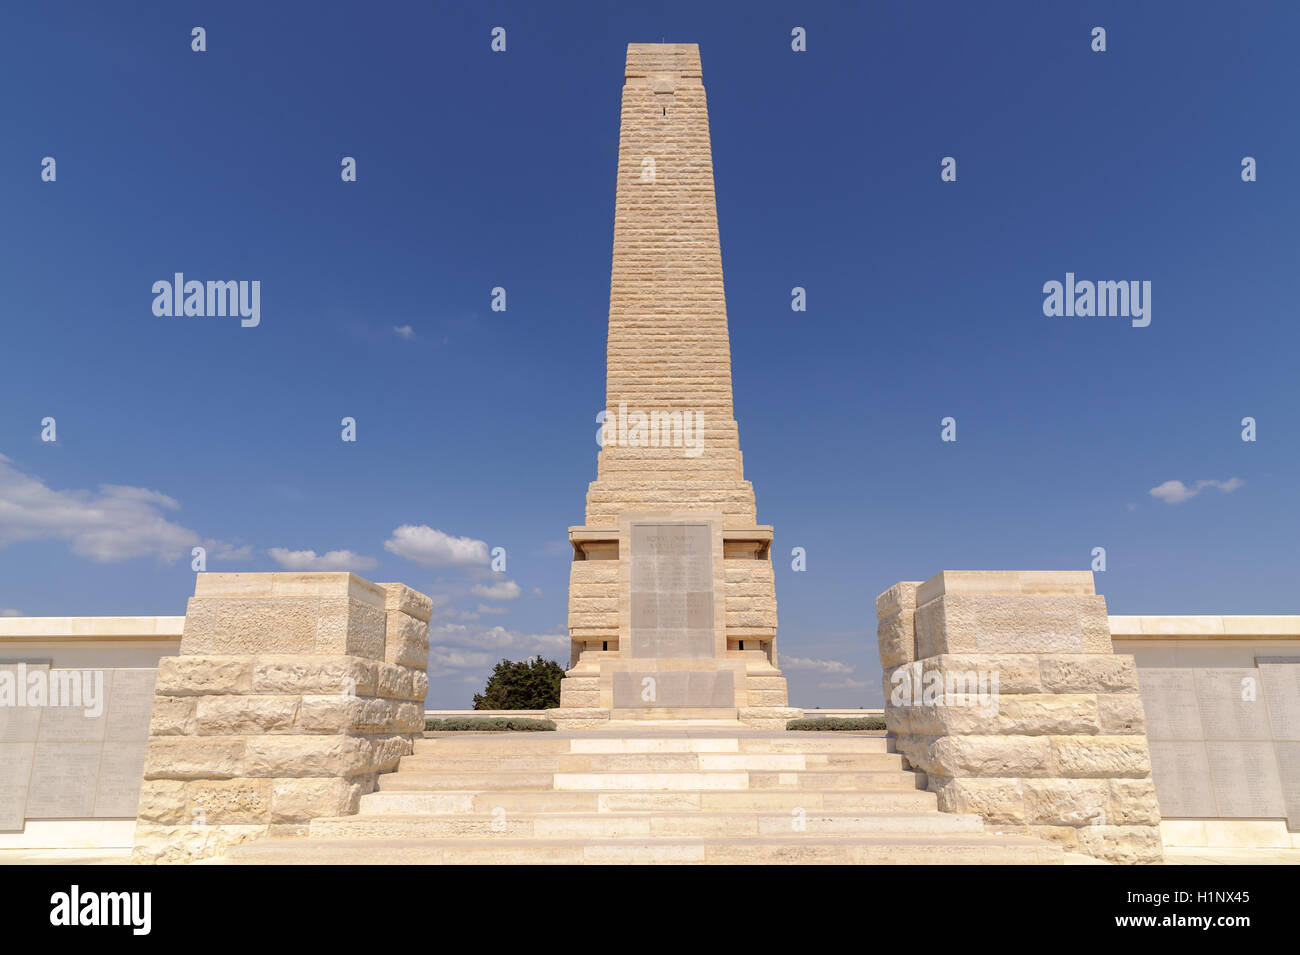 Helles Memorial sert la double fonction de bataille du Commonwealth pour la campagne de Gallipoli memorial Banque D'Images